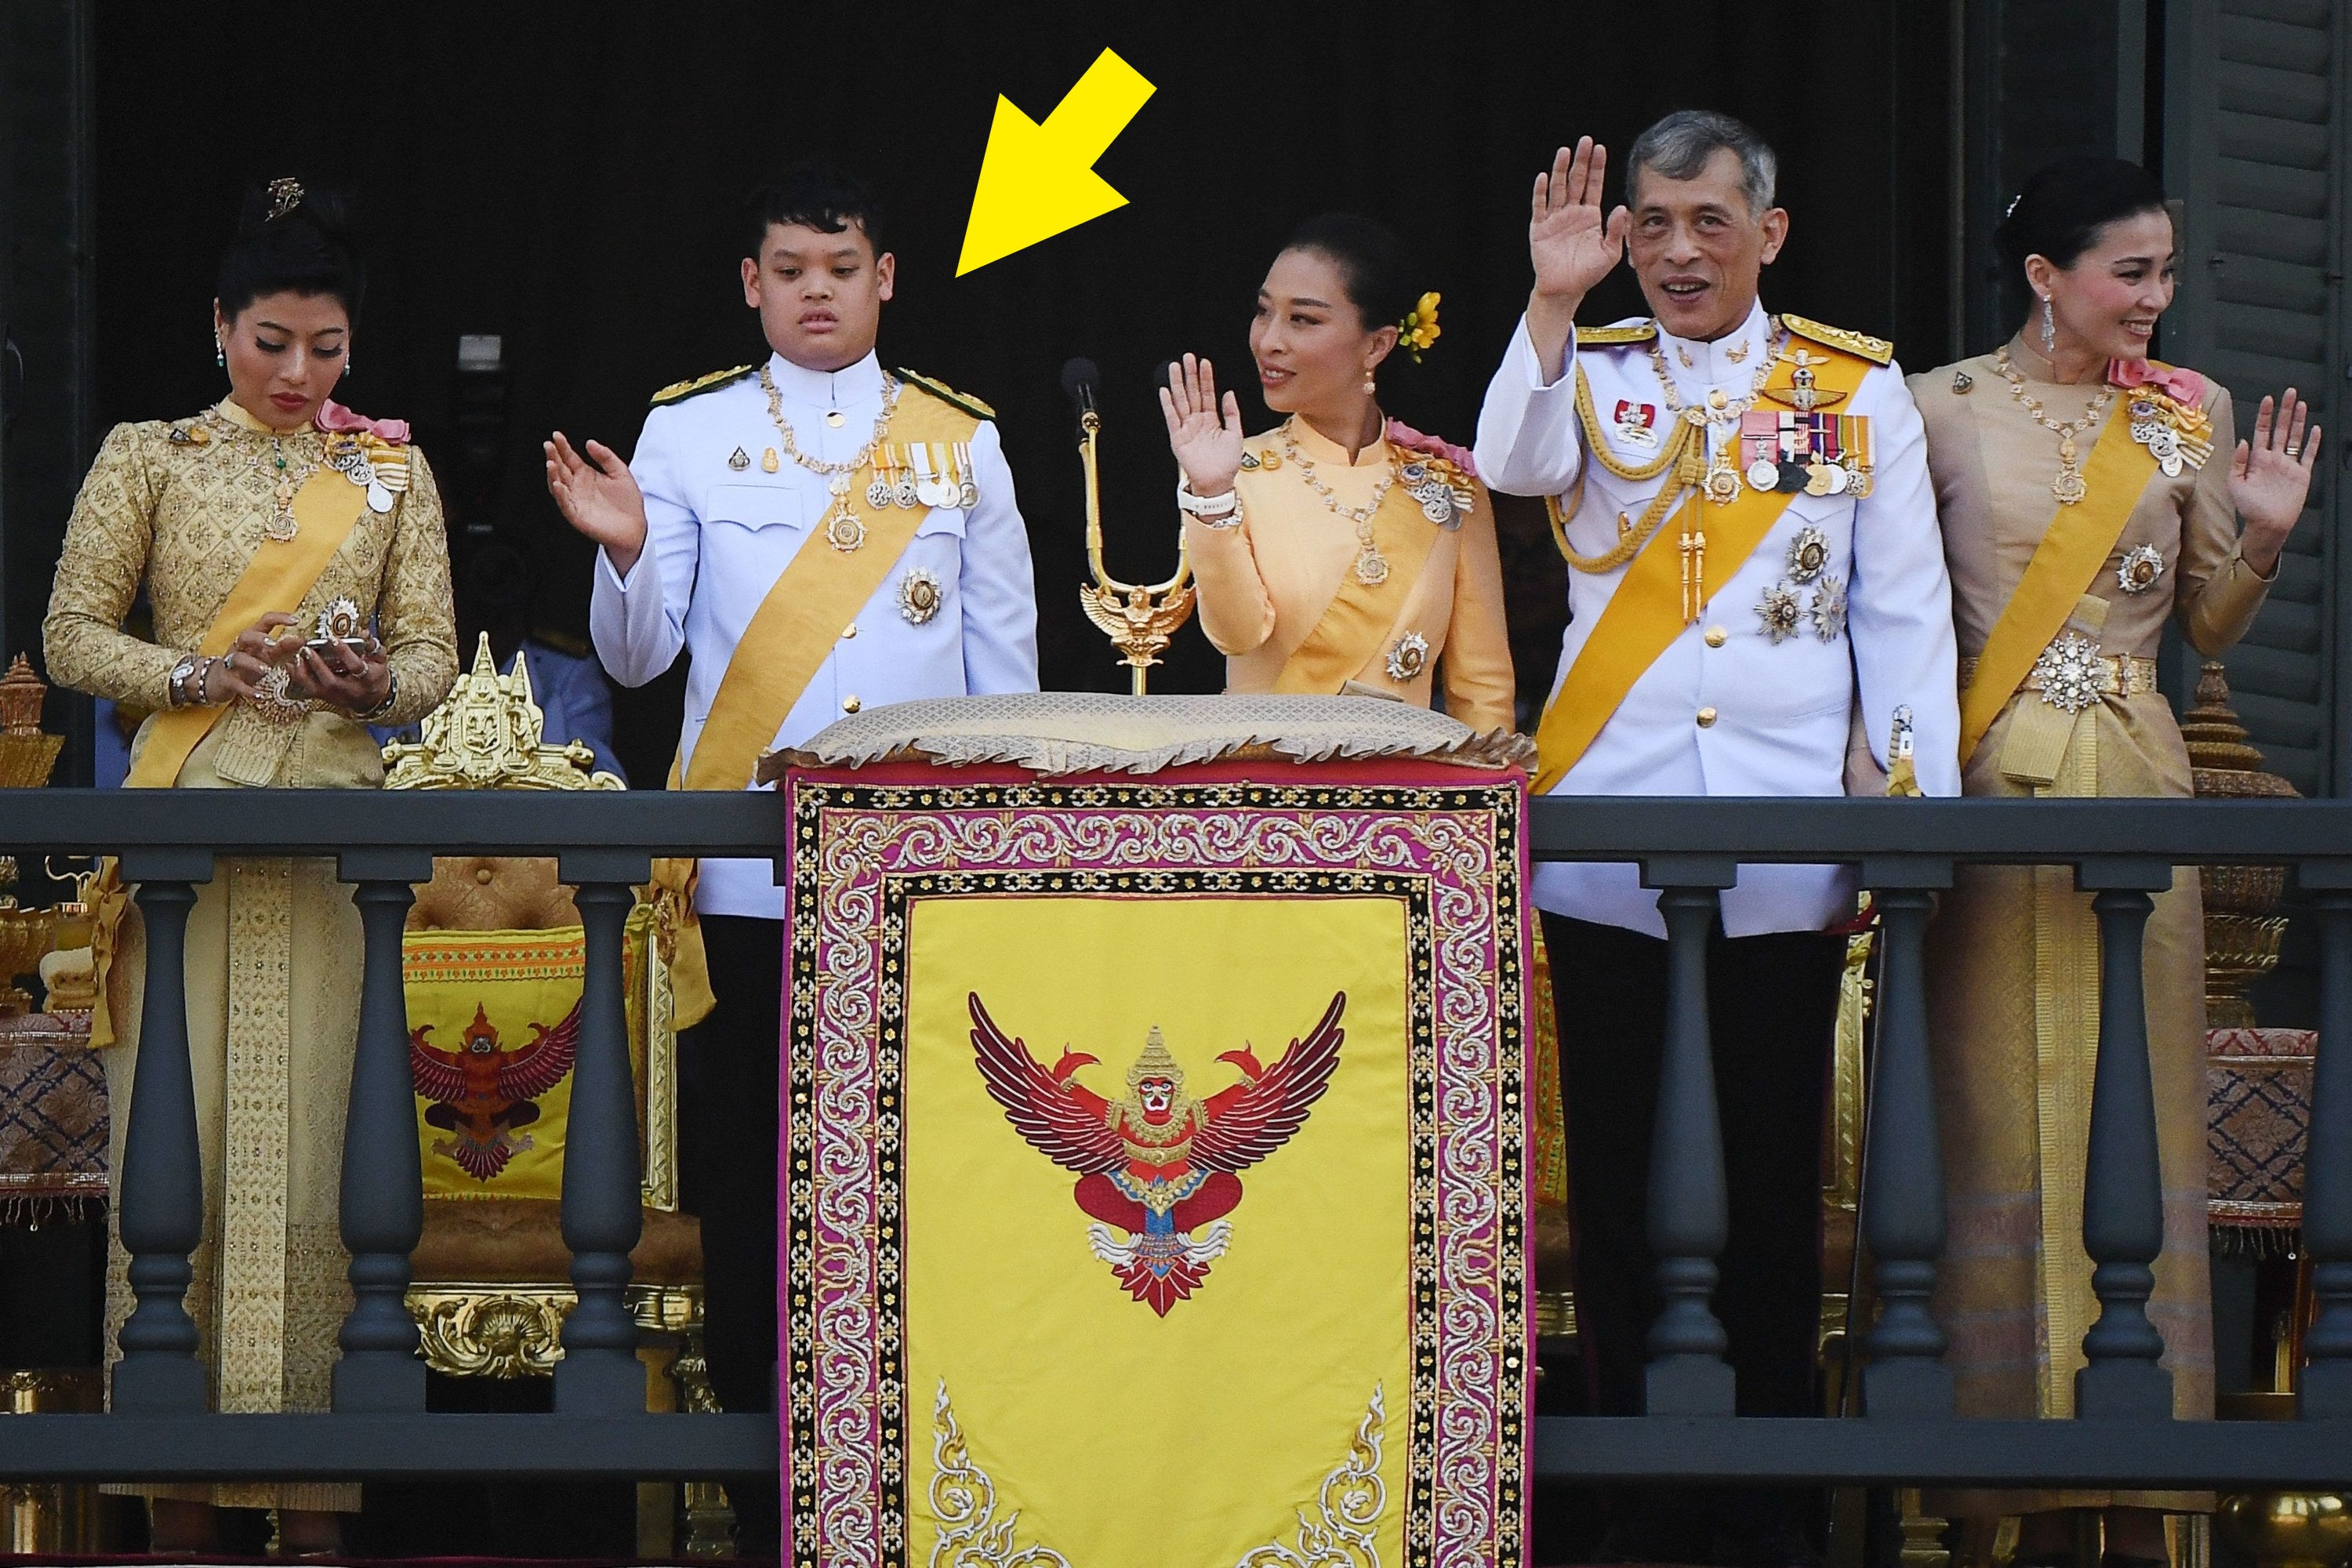 the royal family waving on a balcony